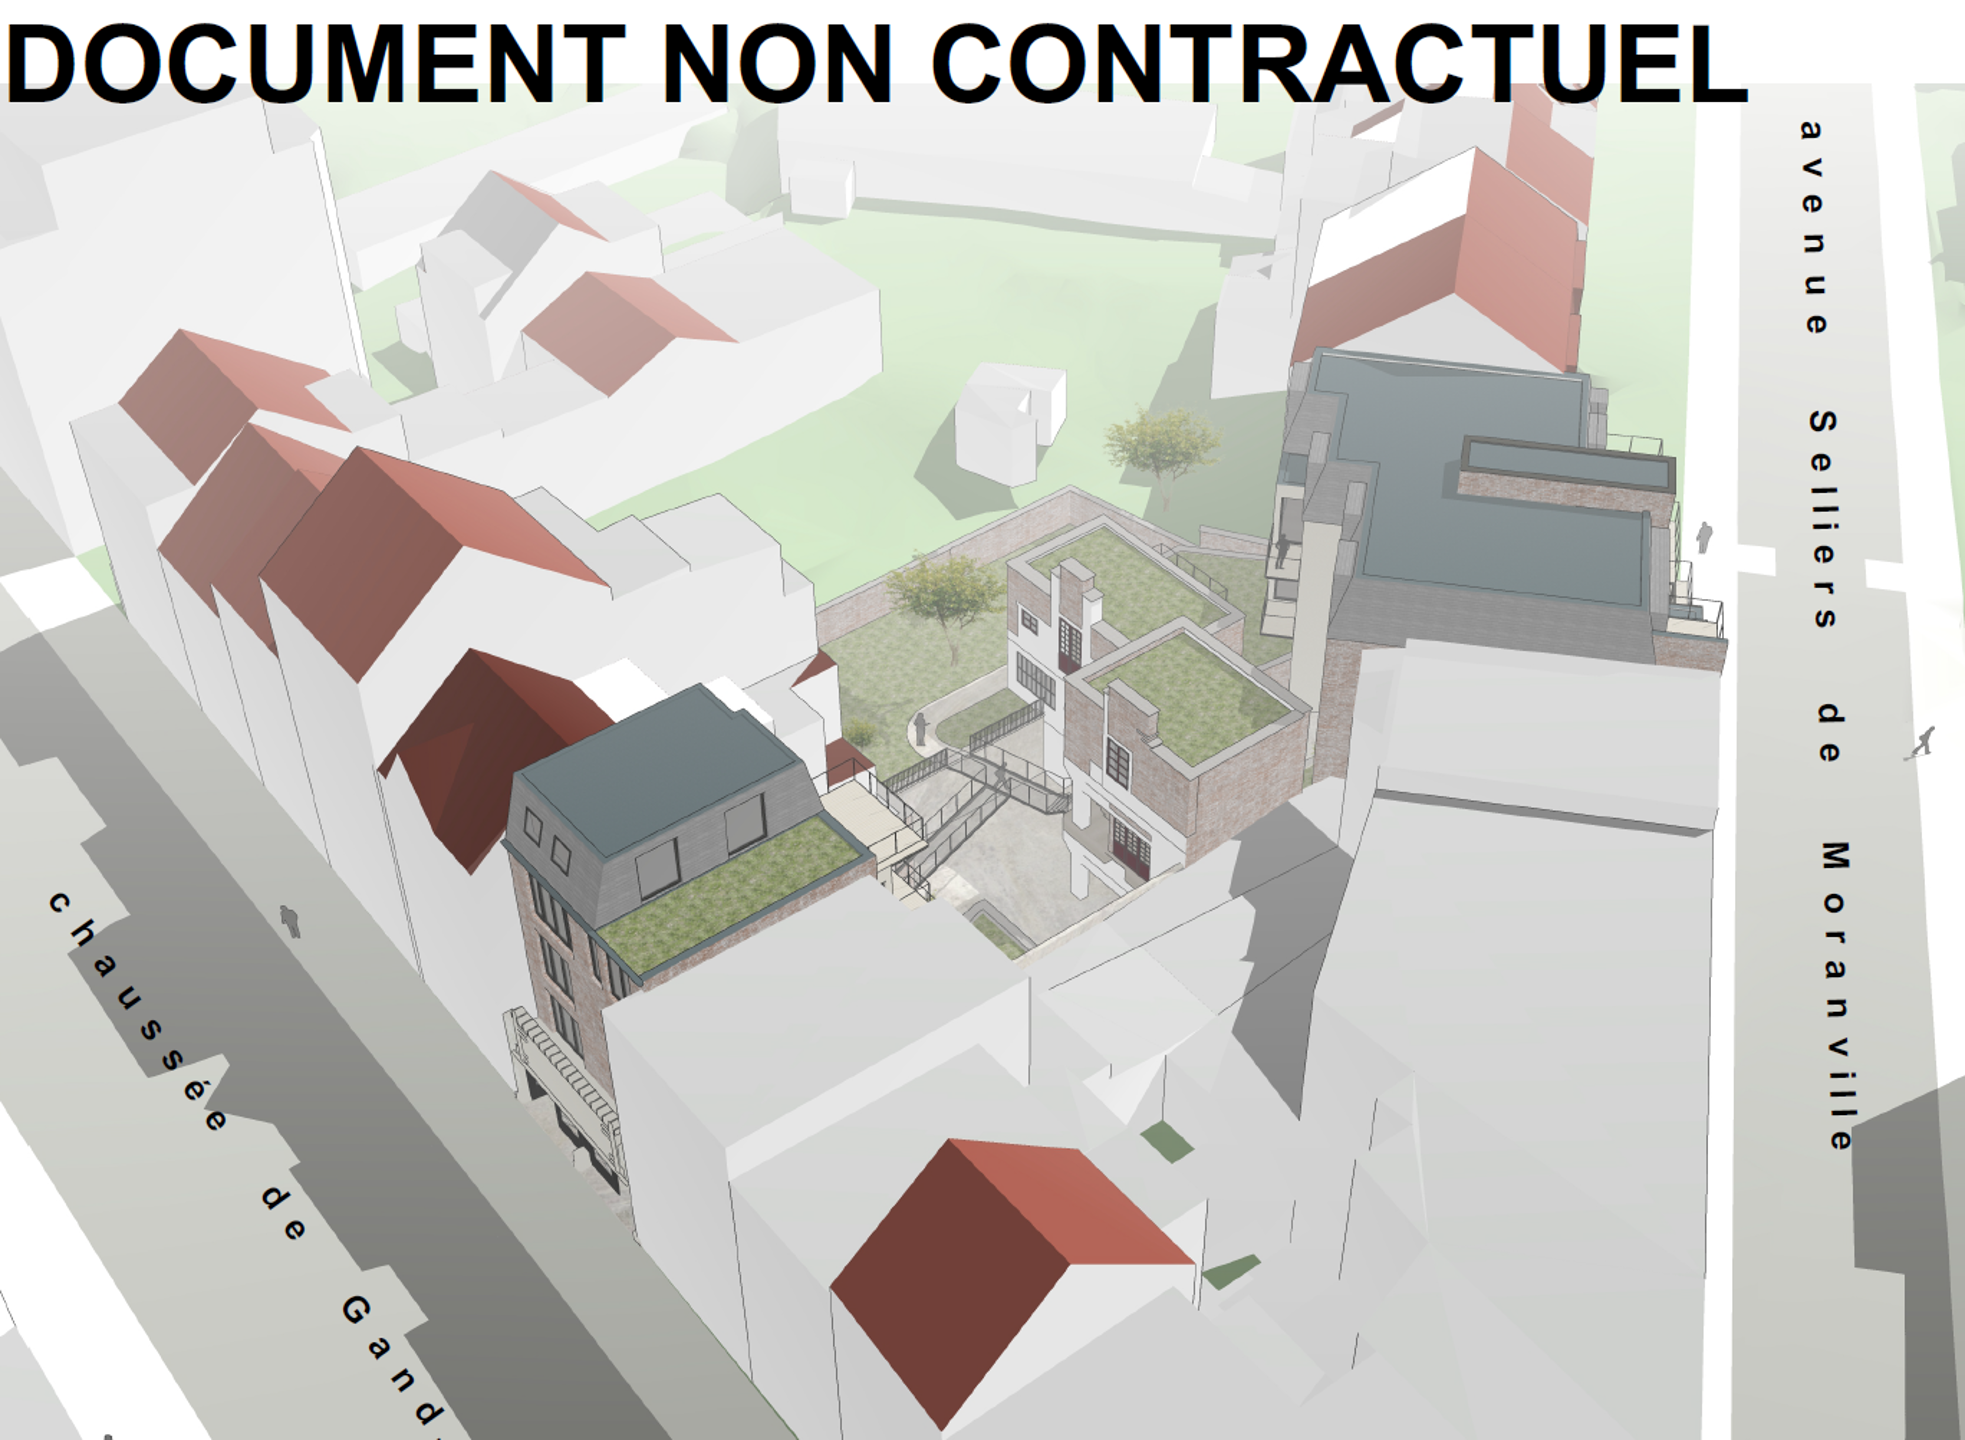 Terrain à bâtir à vendre à Berchem-Sainte-Agathe 1082 1150000.00€  chambres m² - annonce 160733